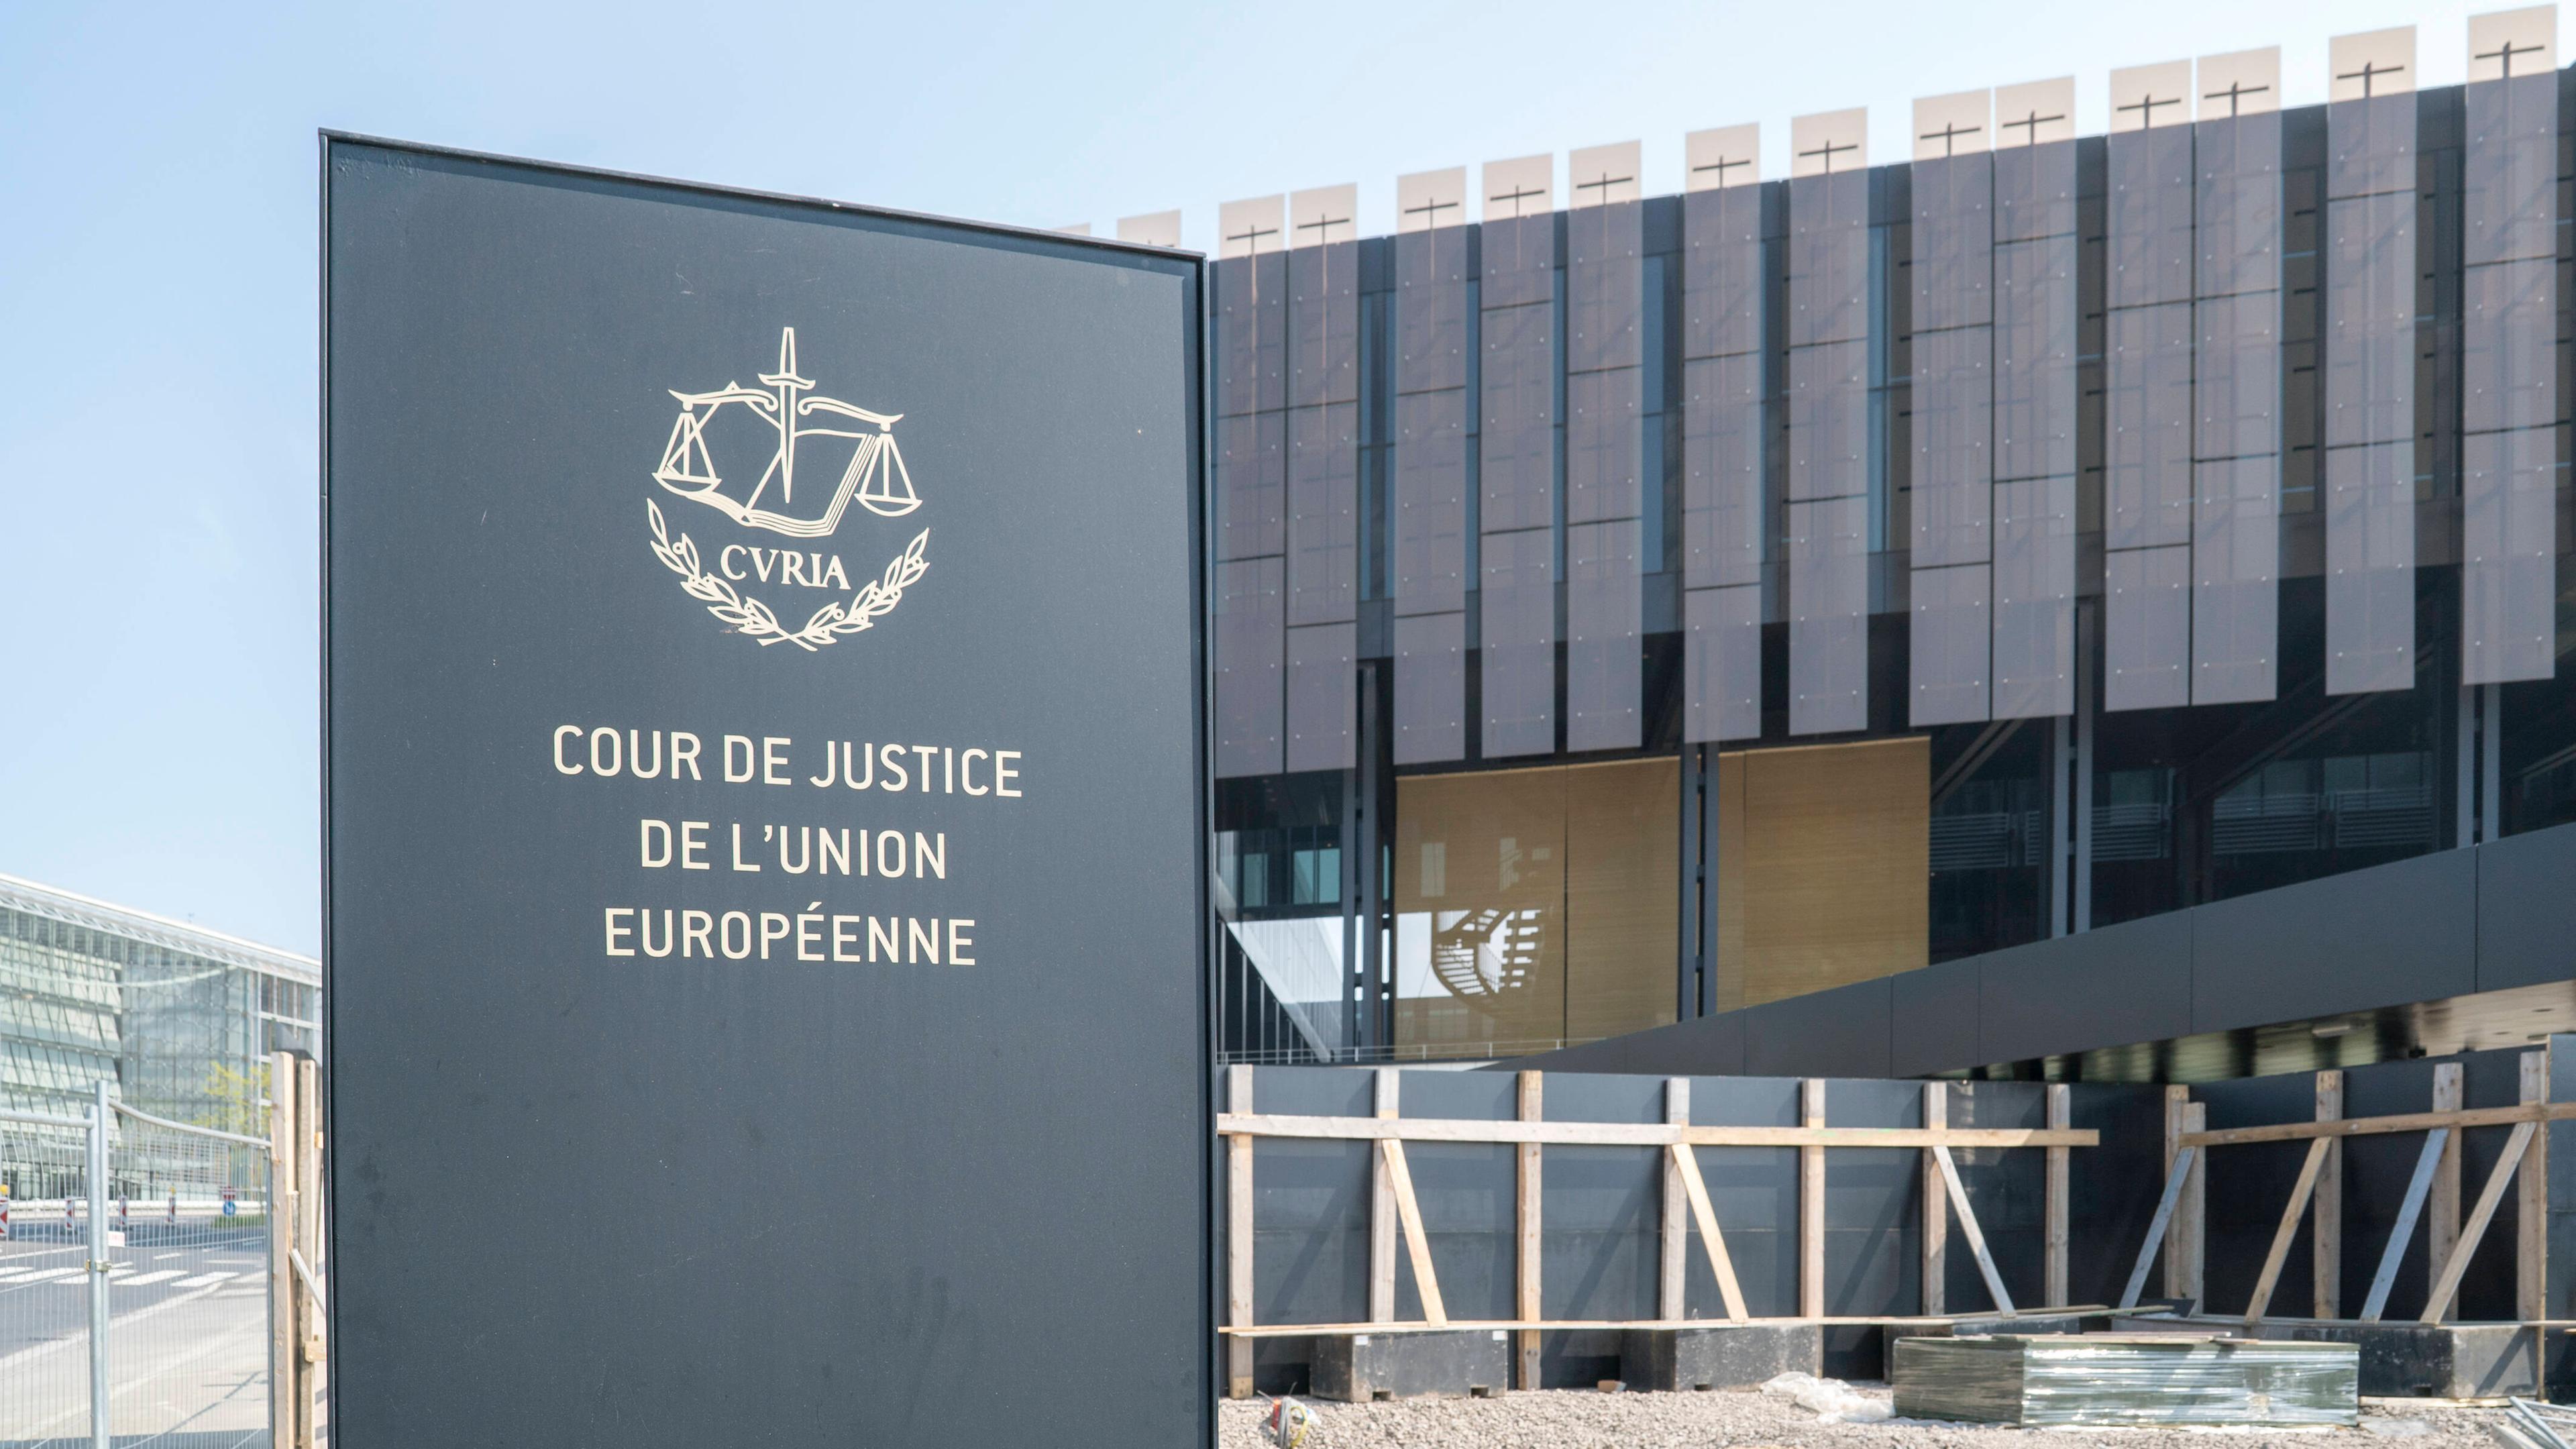 Der Europäische Gerichtshof